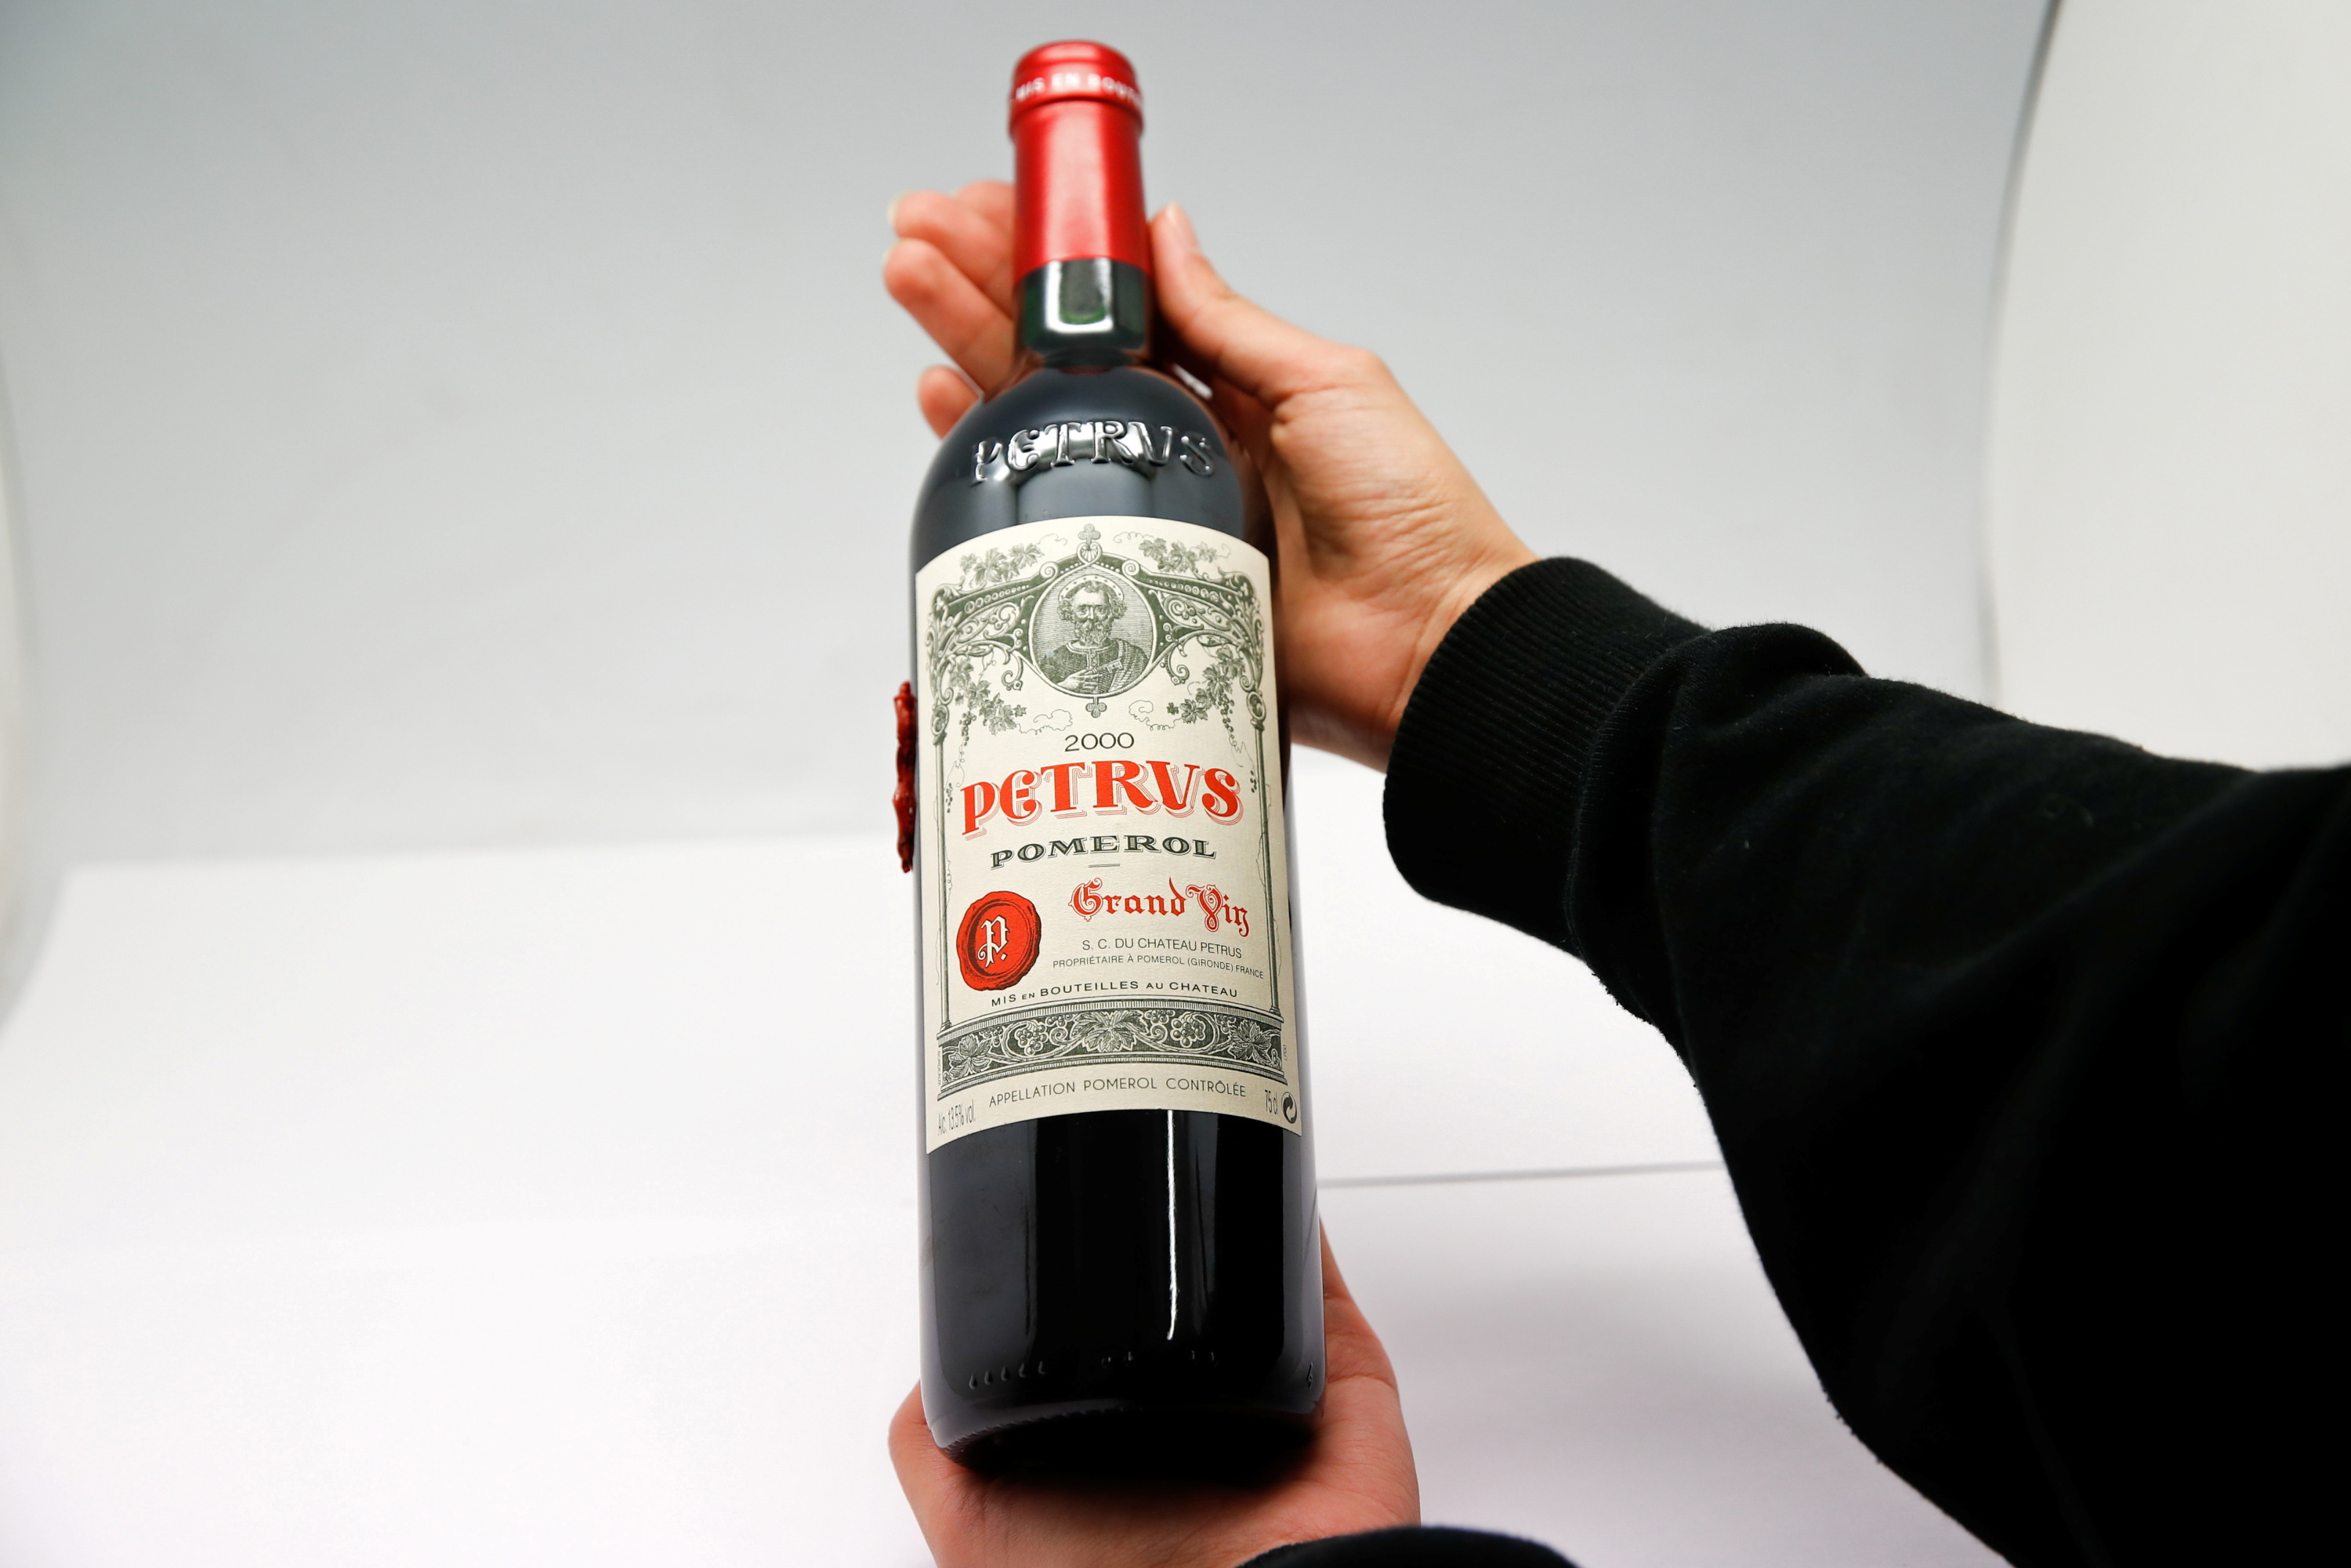 Combien de verres dans une bouteille de vin de 75cl ? – Château de Berne